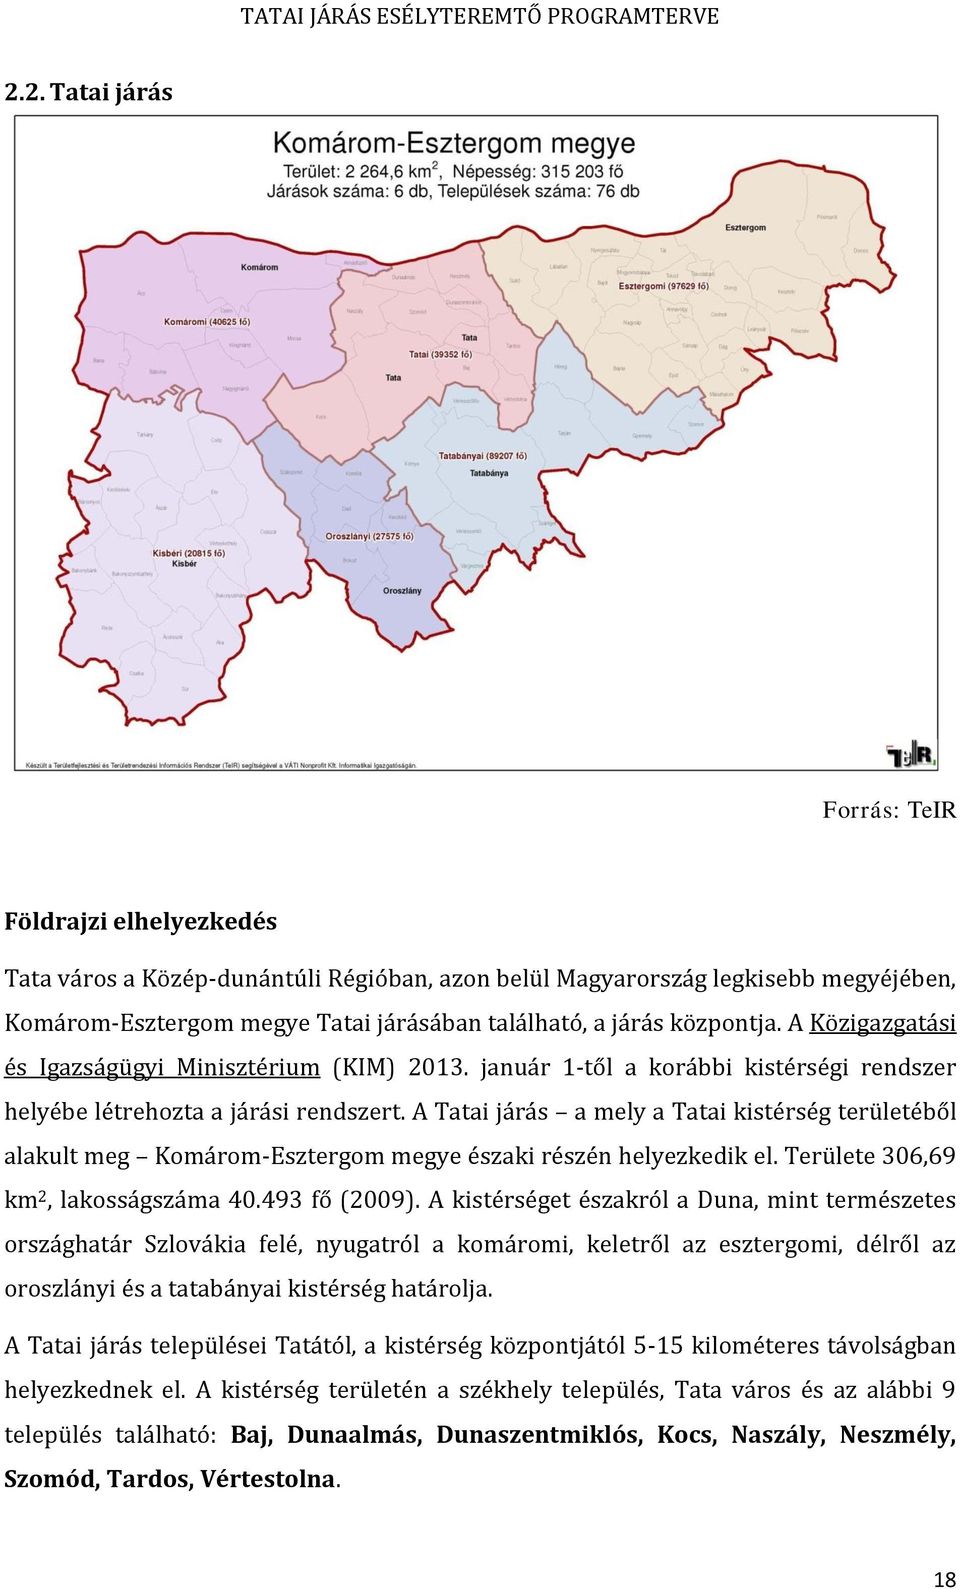 A Tatai járás a mely a Tatai kistérség területéből alakult meg Komárom-Esztergom megye északi részén helyezkedik el. Területe 306,69 km 2, lakosságszáma 40.493 fő (2009).